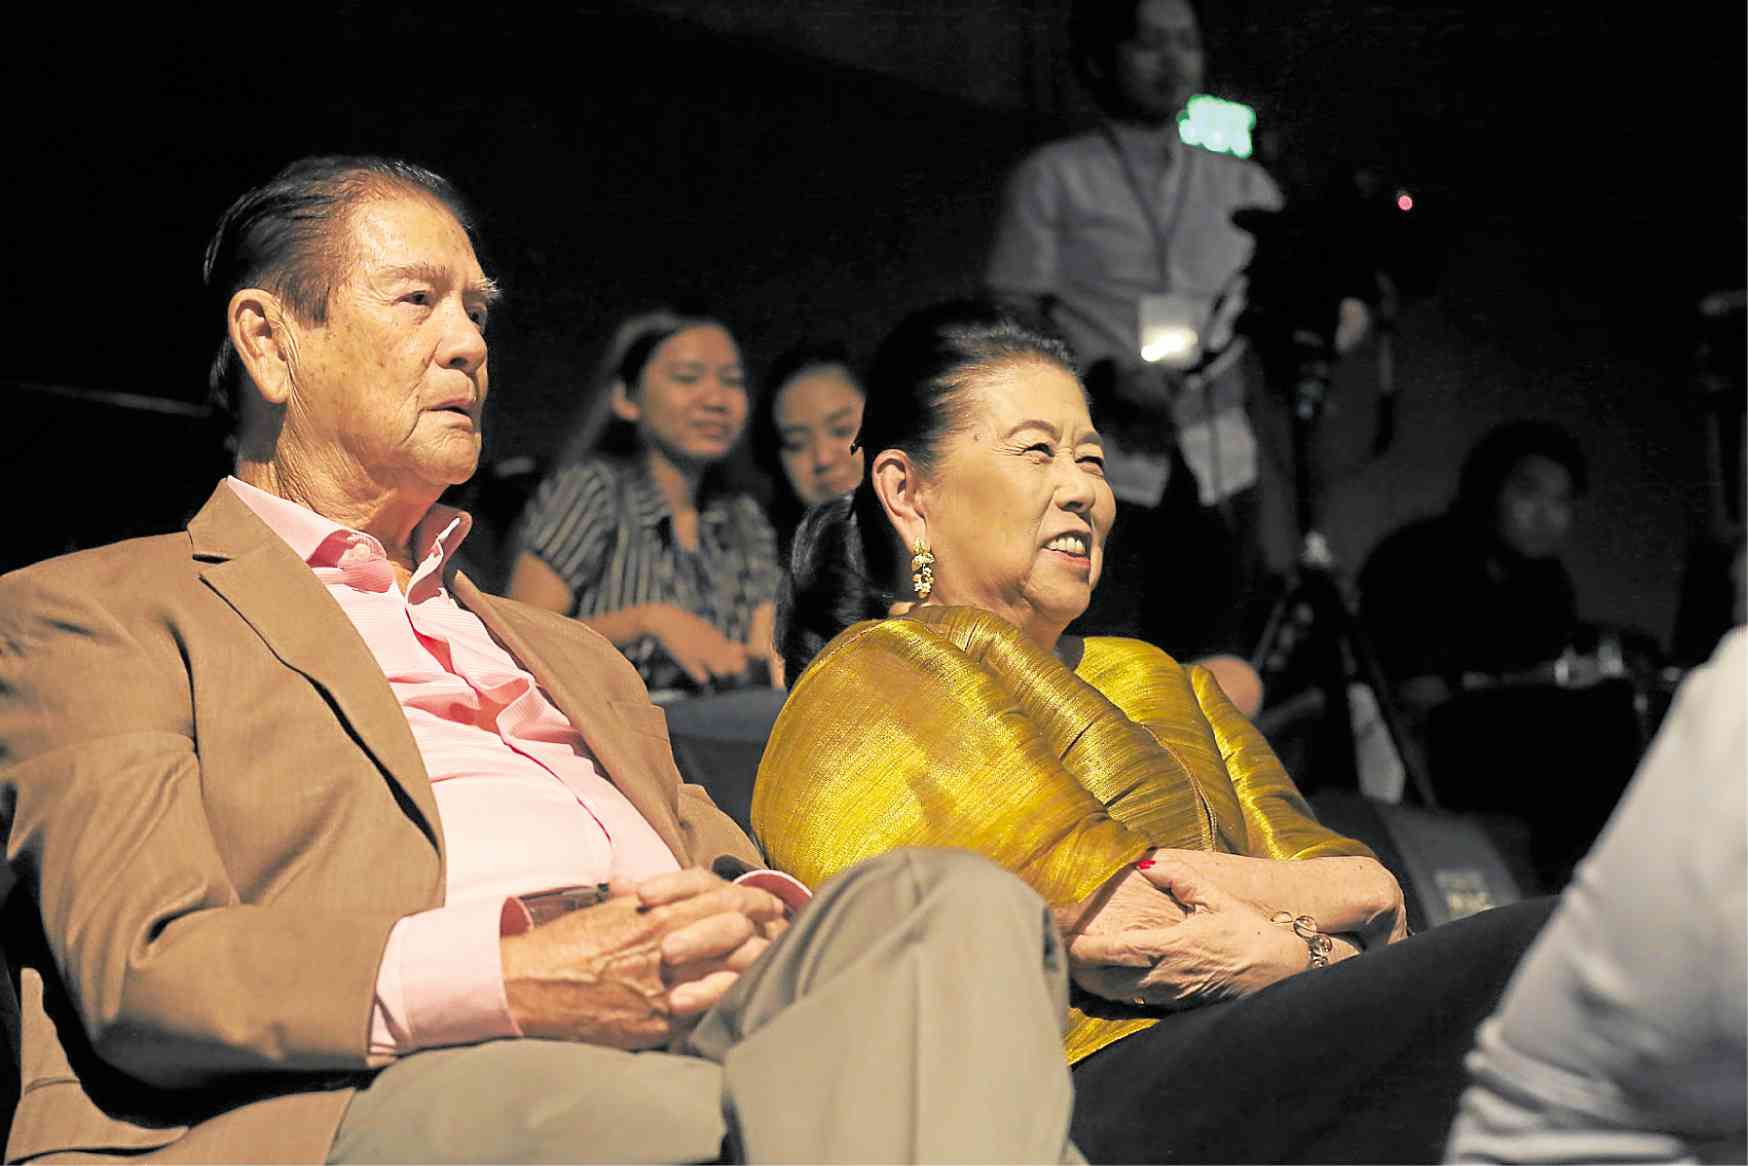 Inquirer chair Marixi Rufino Prieto (right) with husband Alex